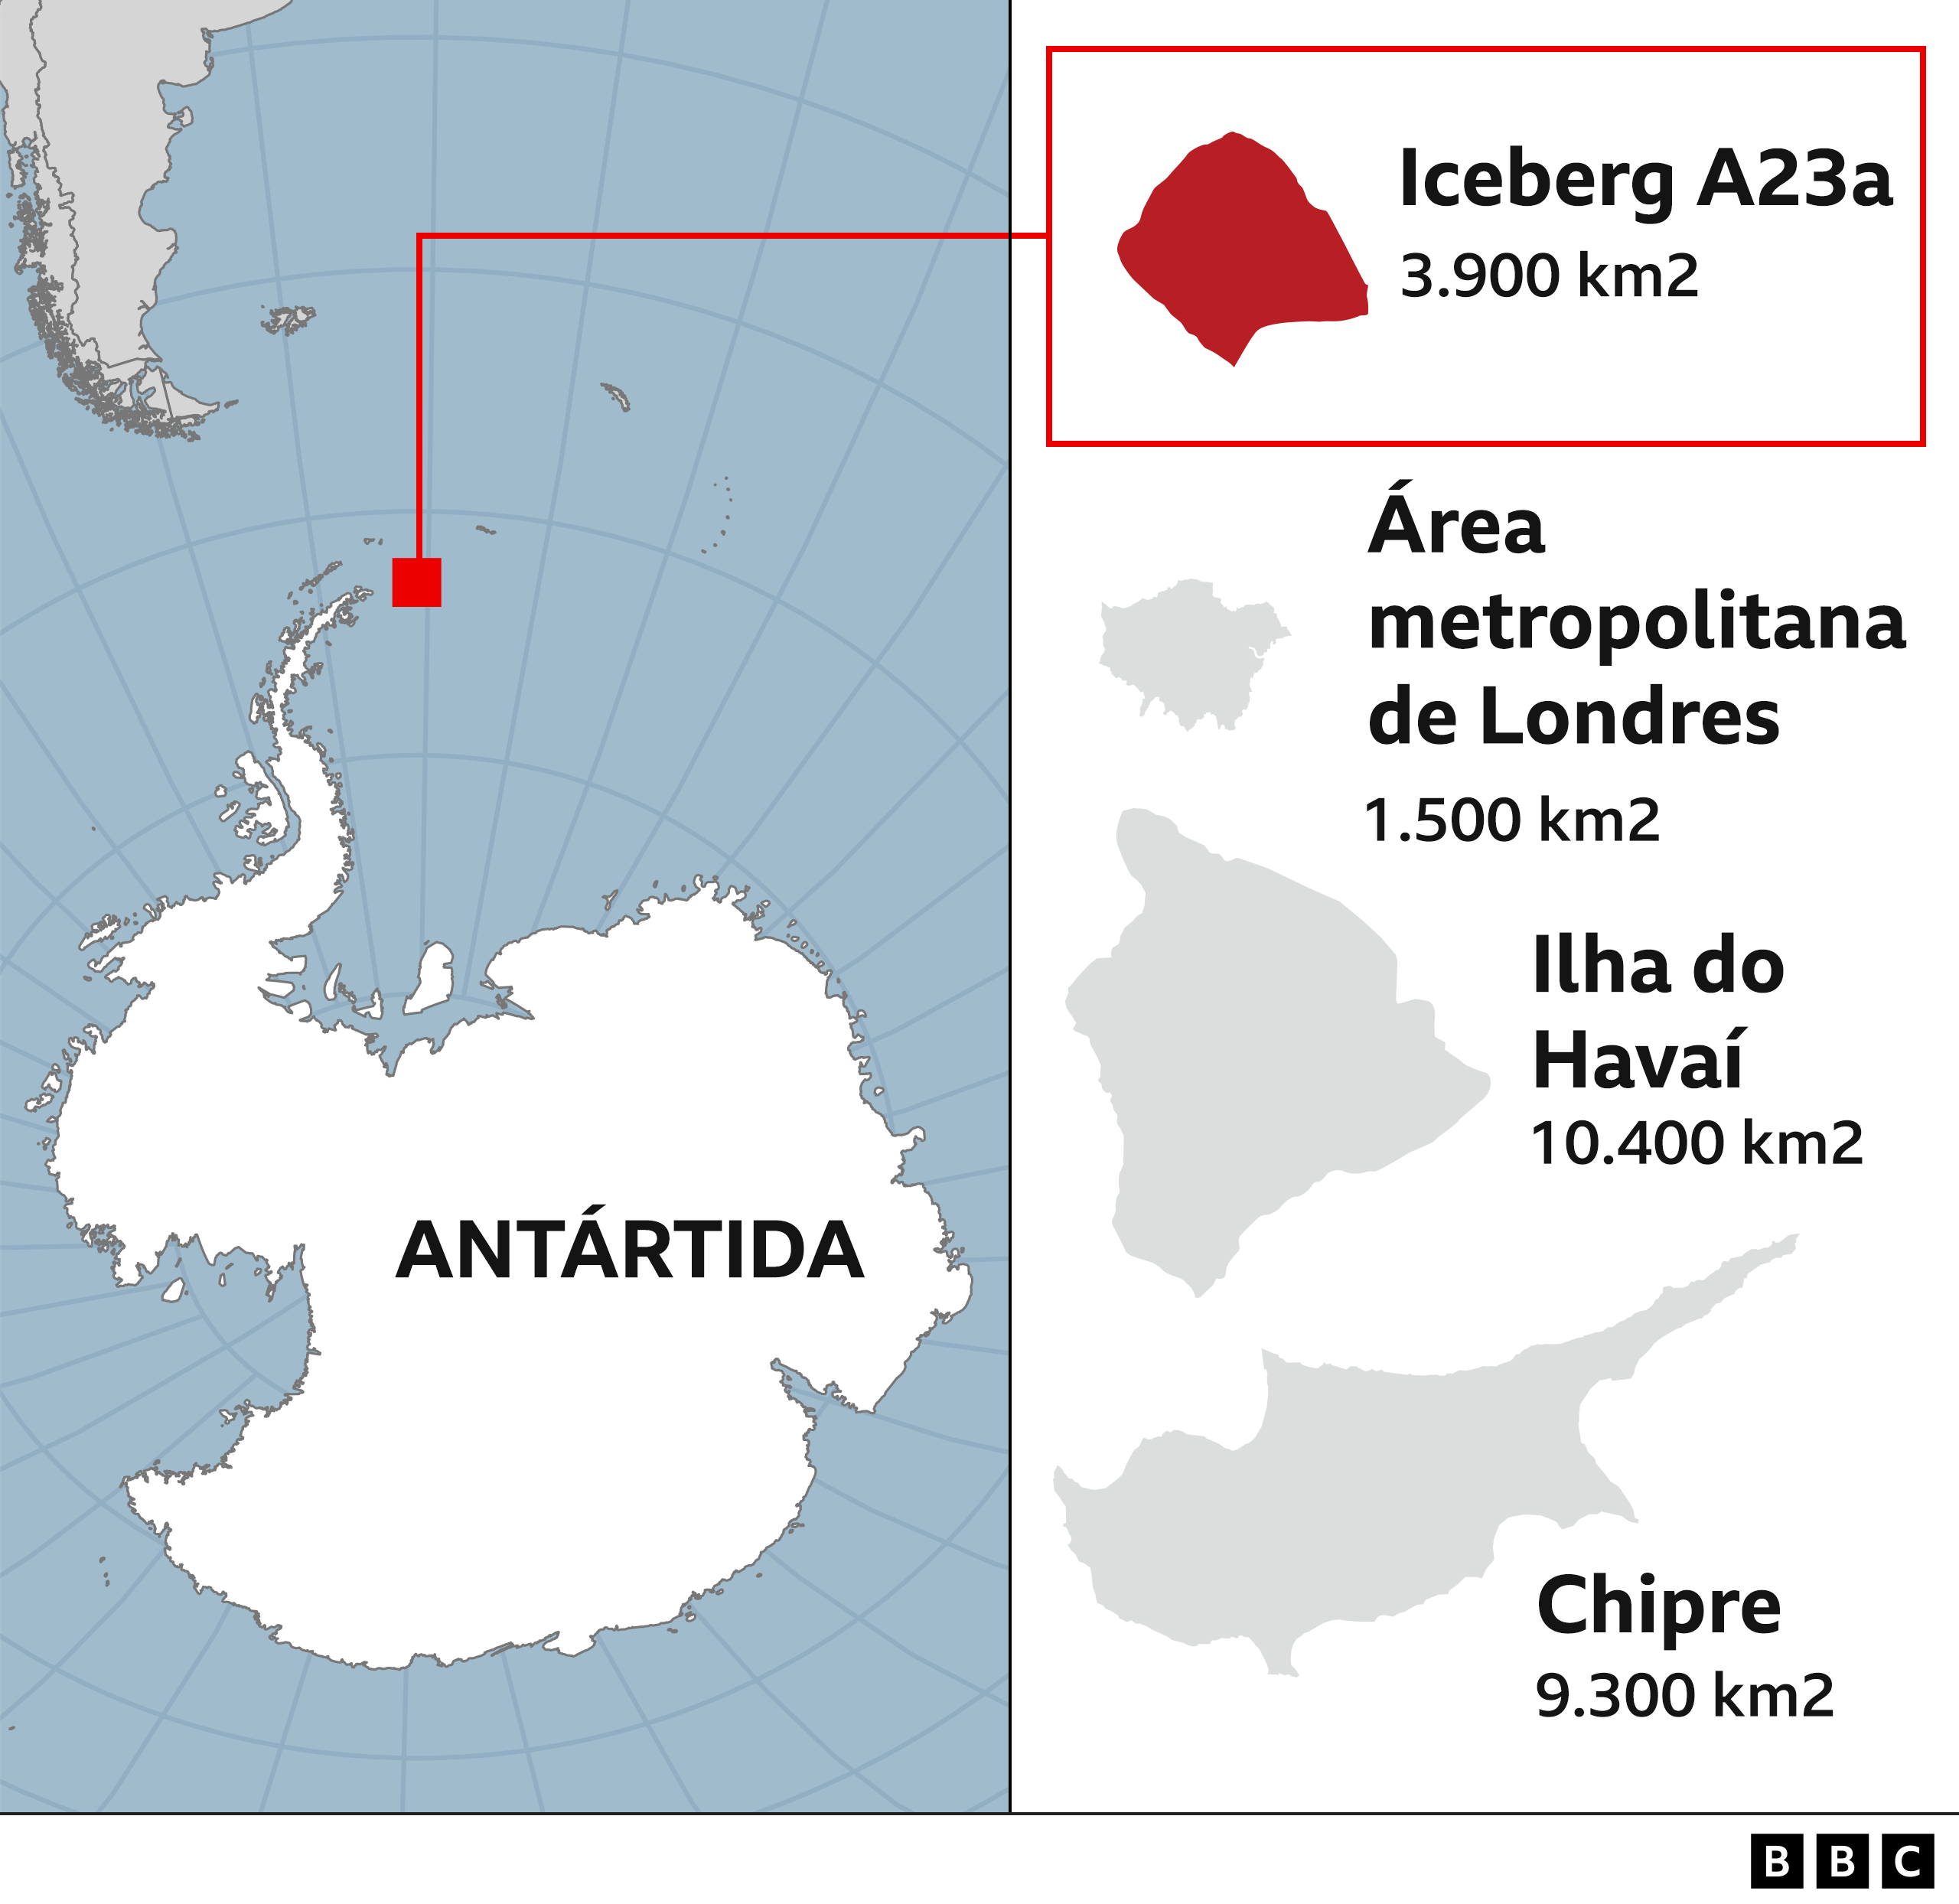 Comparação de tamanho, mostrando a Antártida. a localização do iceberg ao Norte e compará-lo com o tamanho de Londres, Ilha Grande do Havaí e Chipre